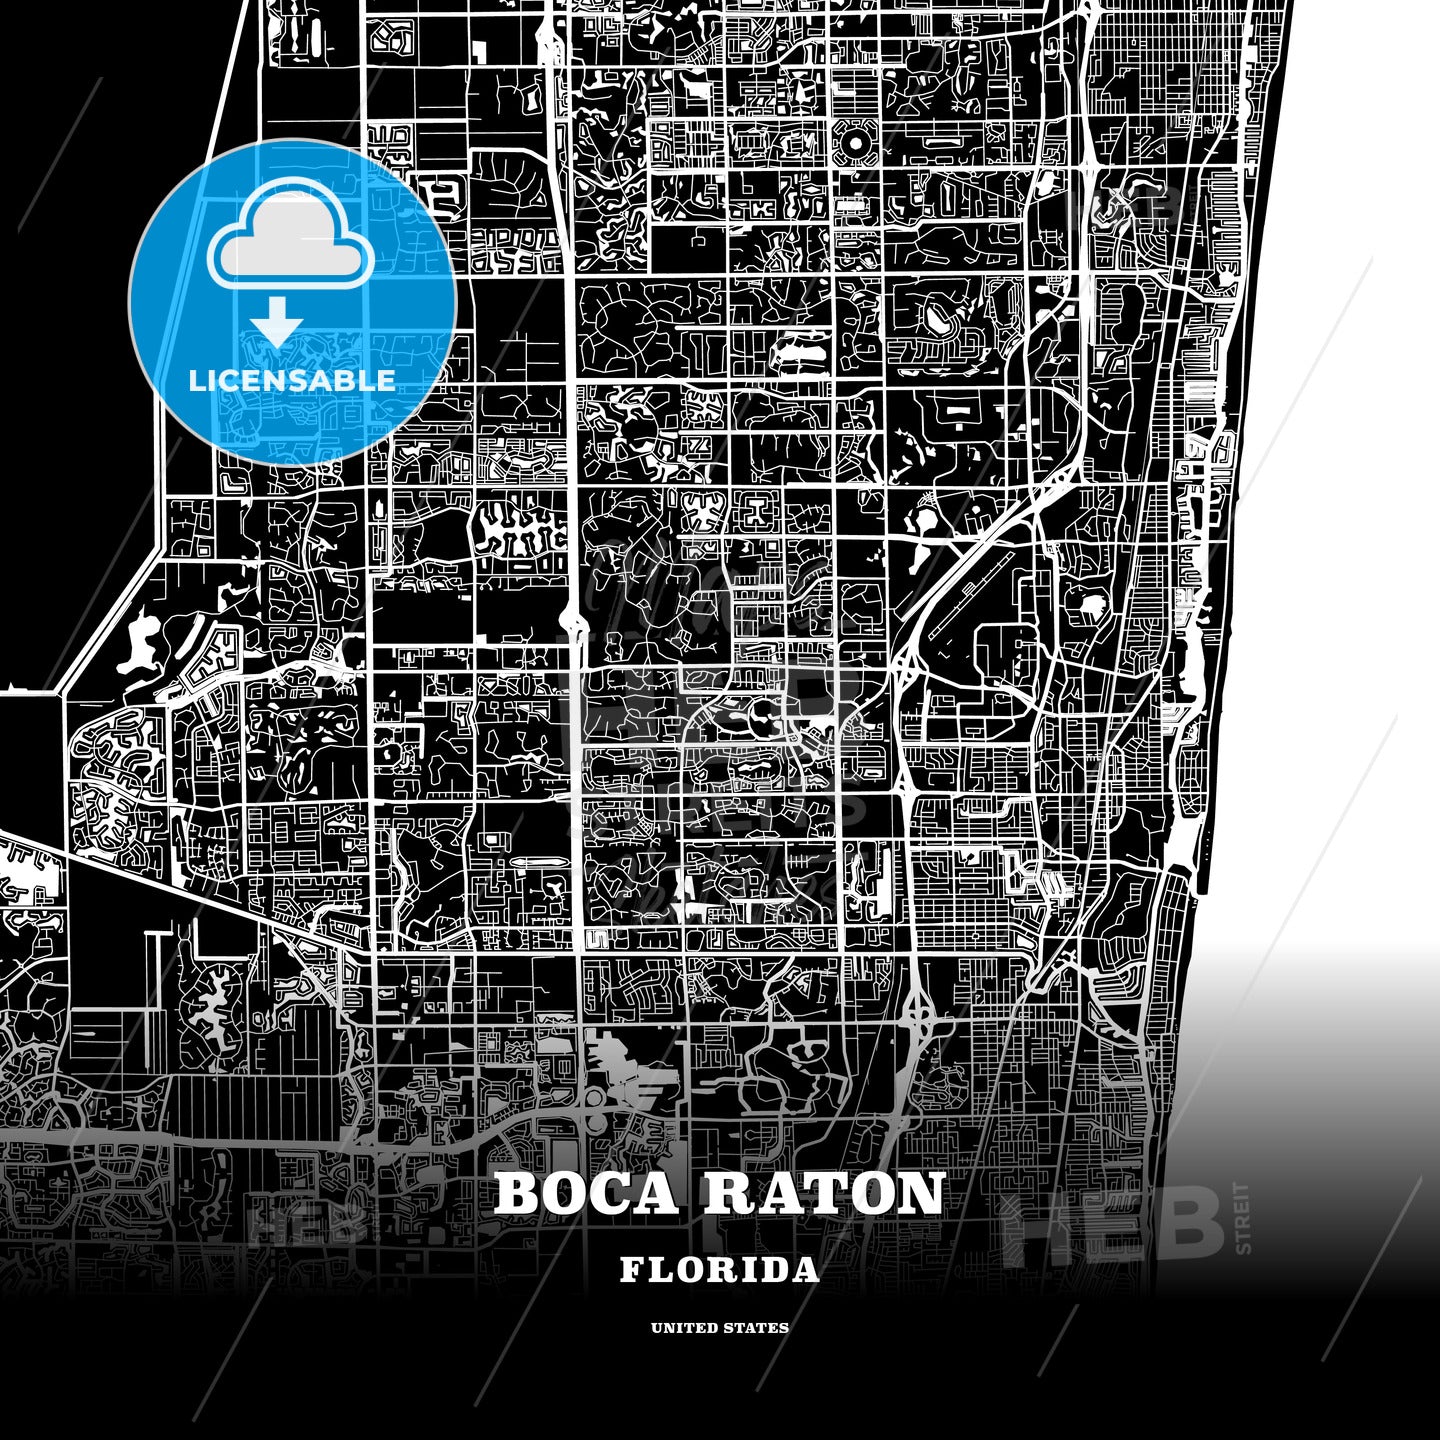 Boca Raton, Florida, USA map